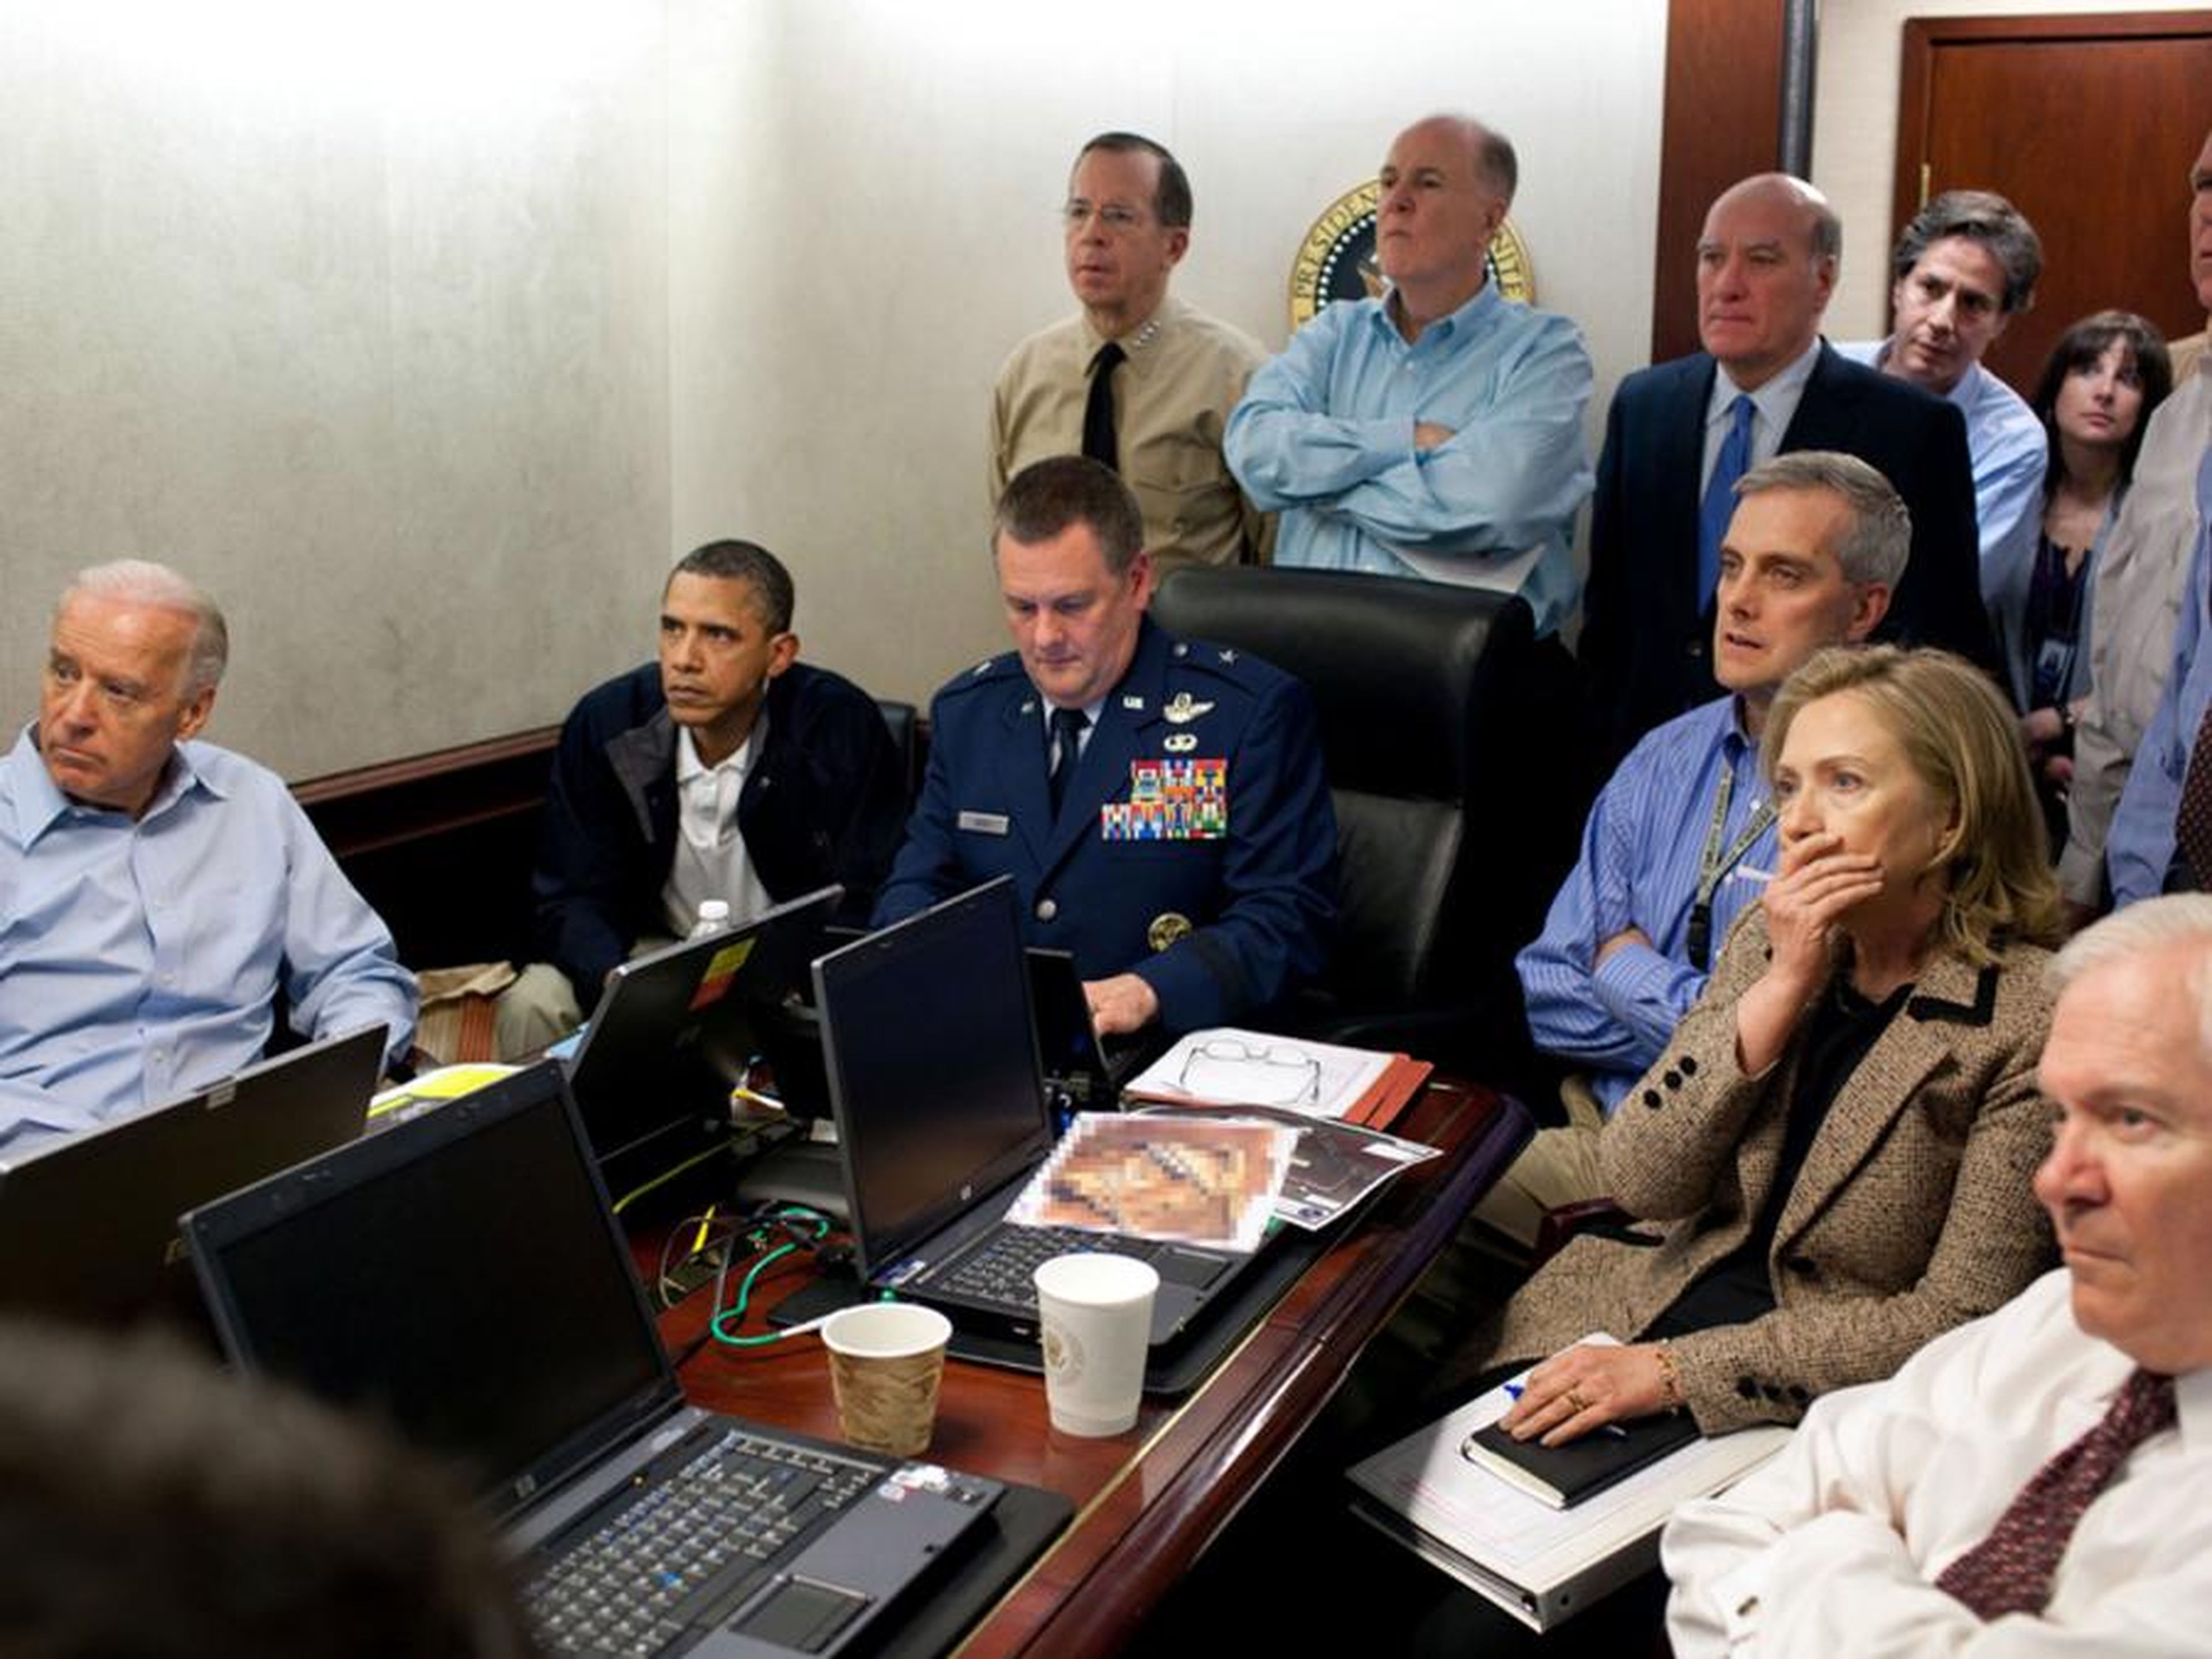 La fotografía "The situation room" fue tomada por el fotógrafo de la Casa Blanca, Pete Souza.